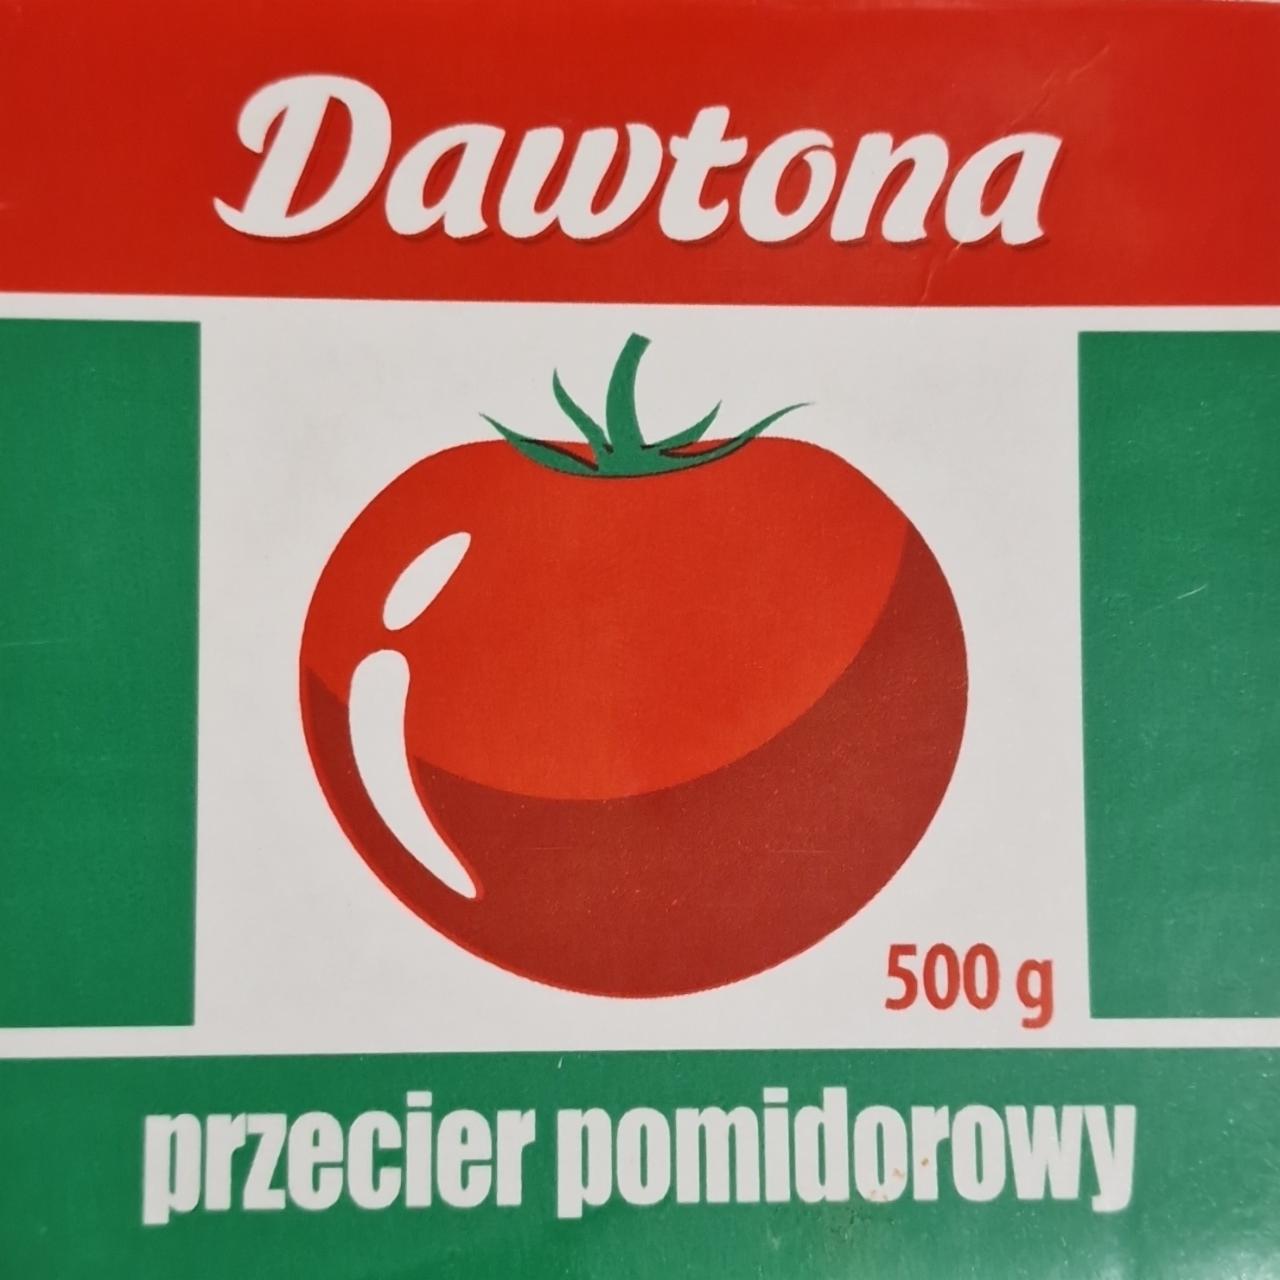 Фото - Паста томатная Dawtona